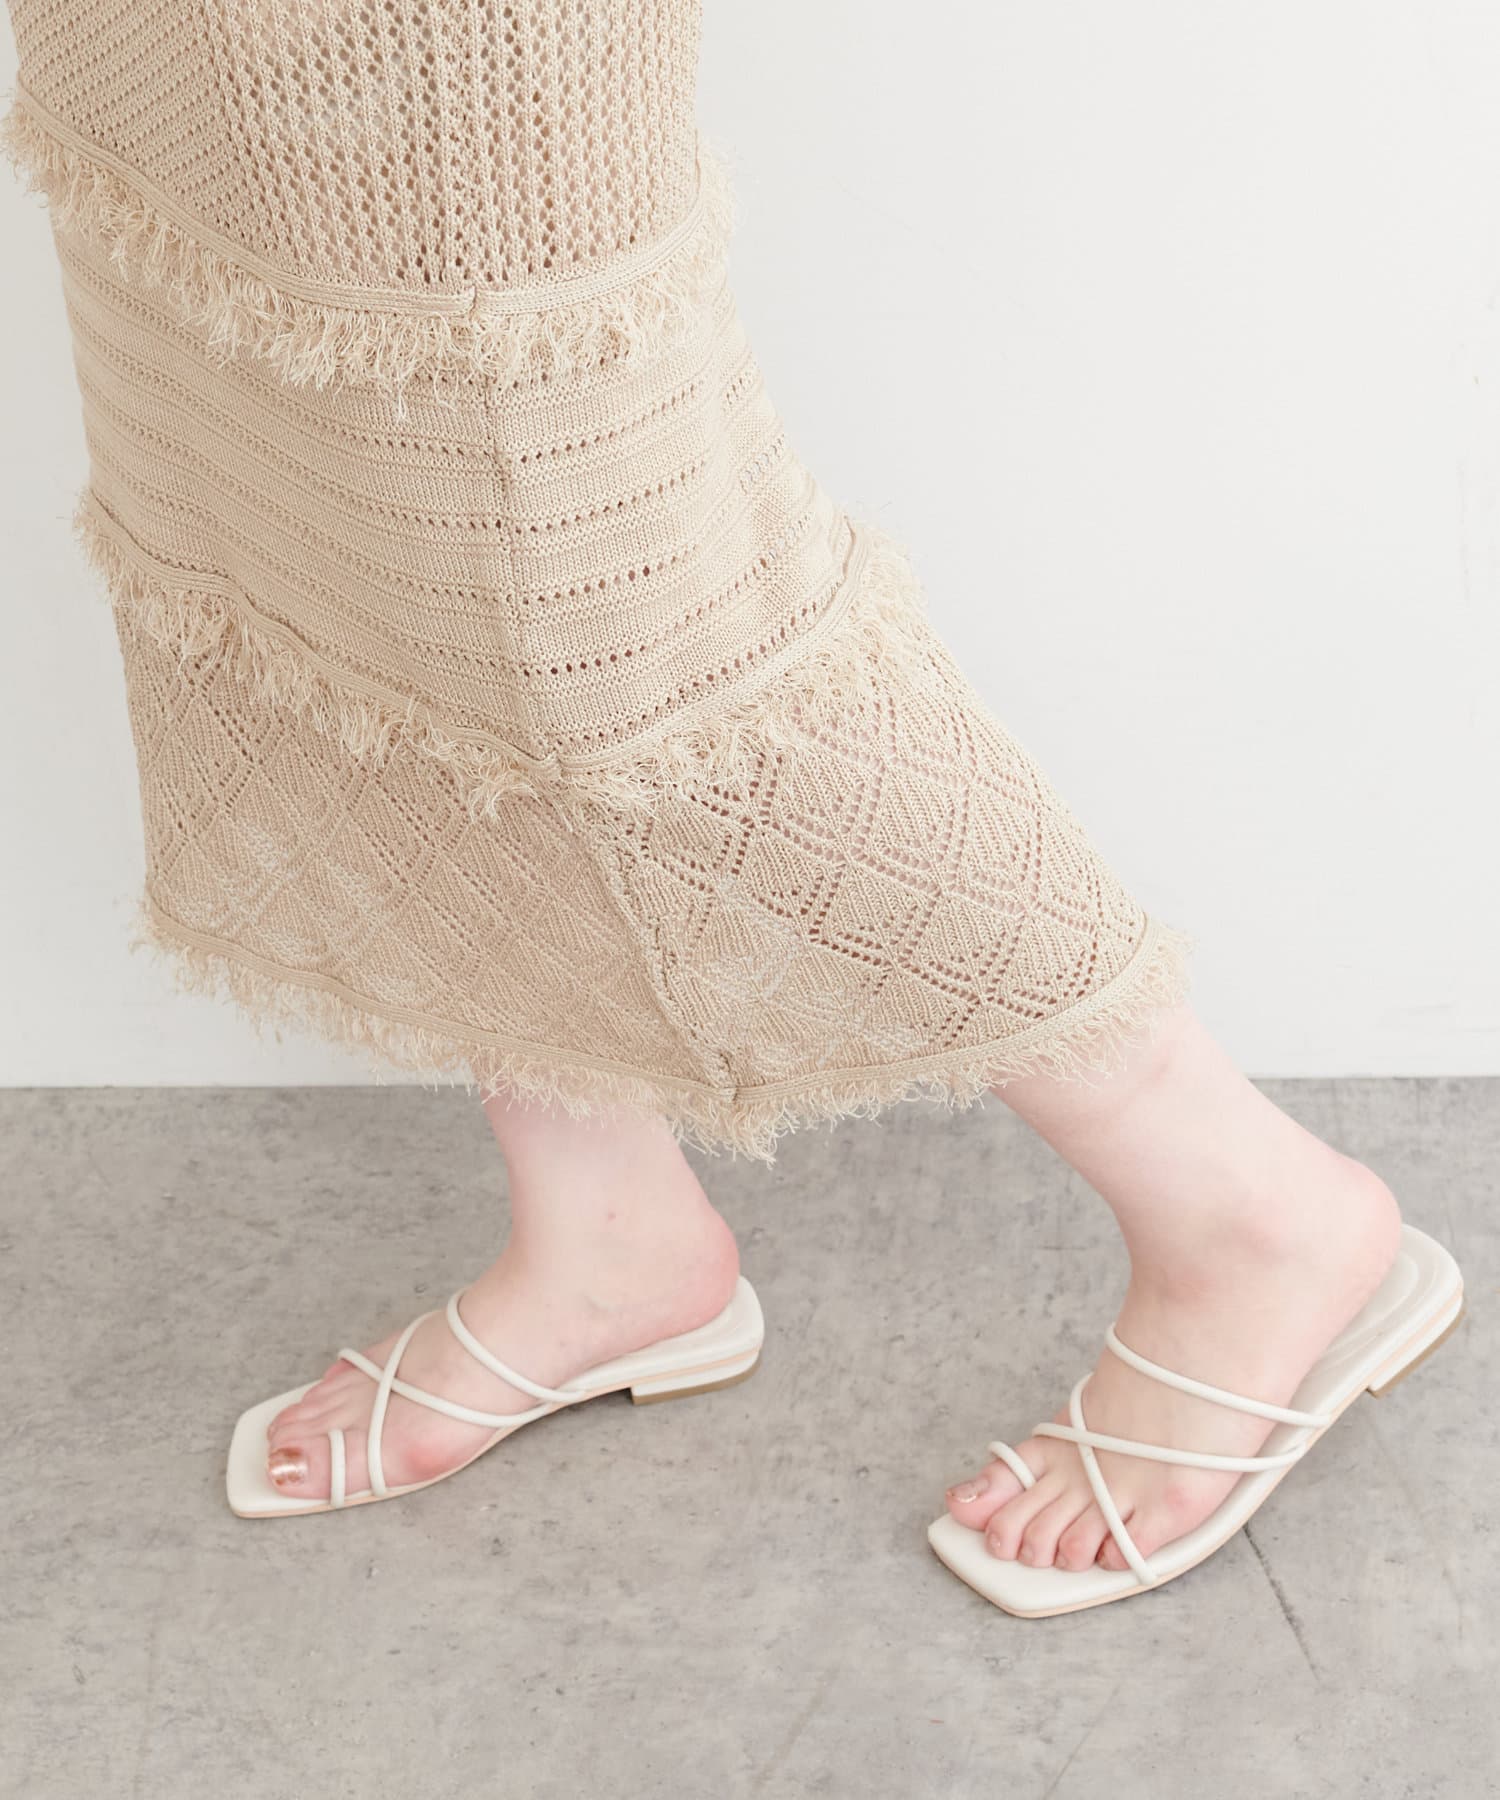 natural couture(ナチュラルクチュール) 透かし編みフリンジスカート